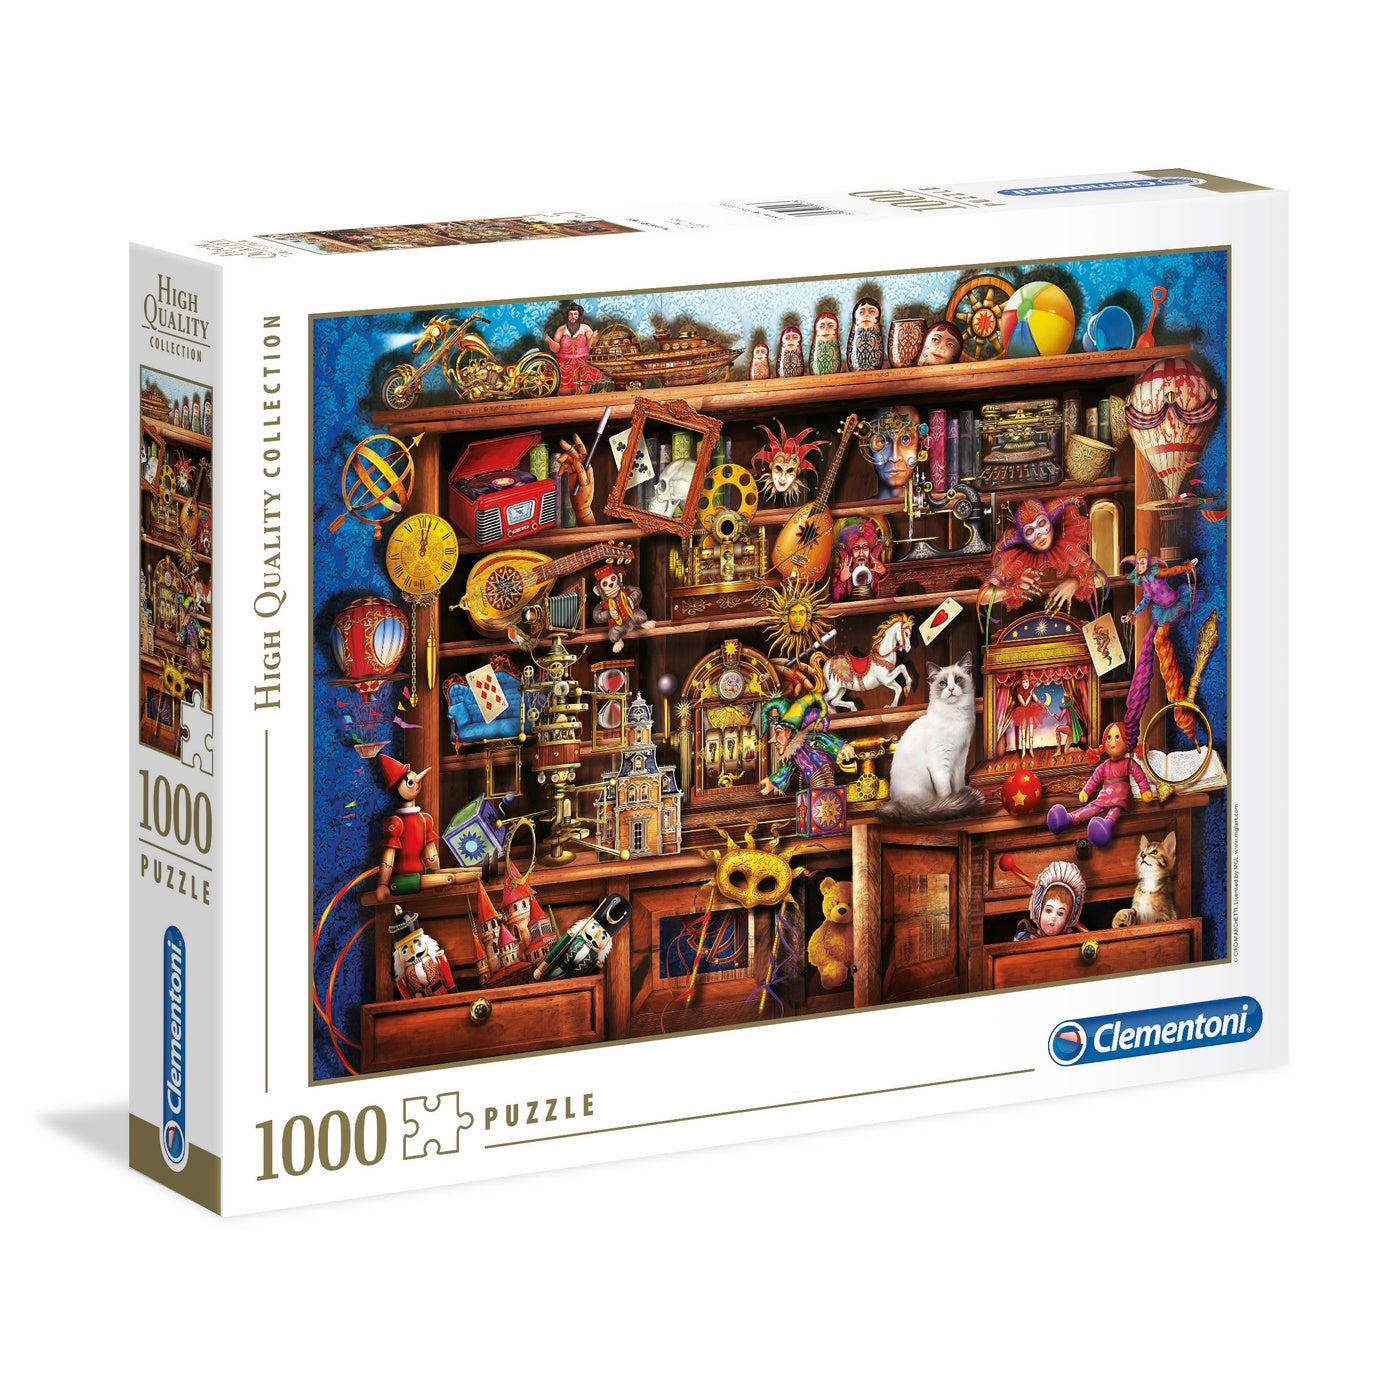 Clementoni 1000 Piece Jigsaw Puzzle - Ye Old Shoppe